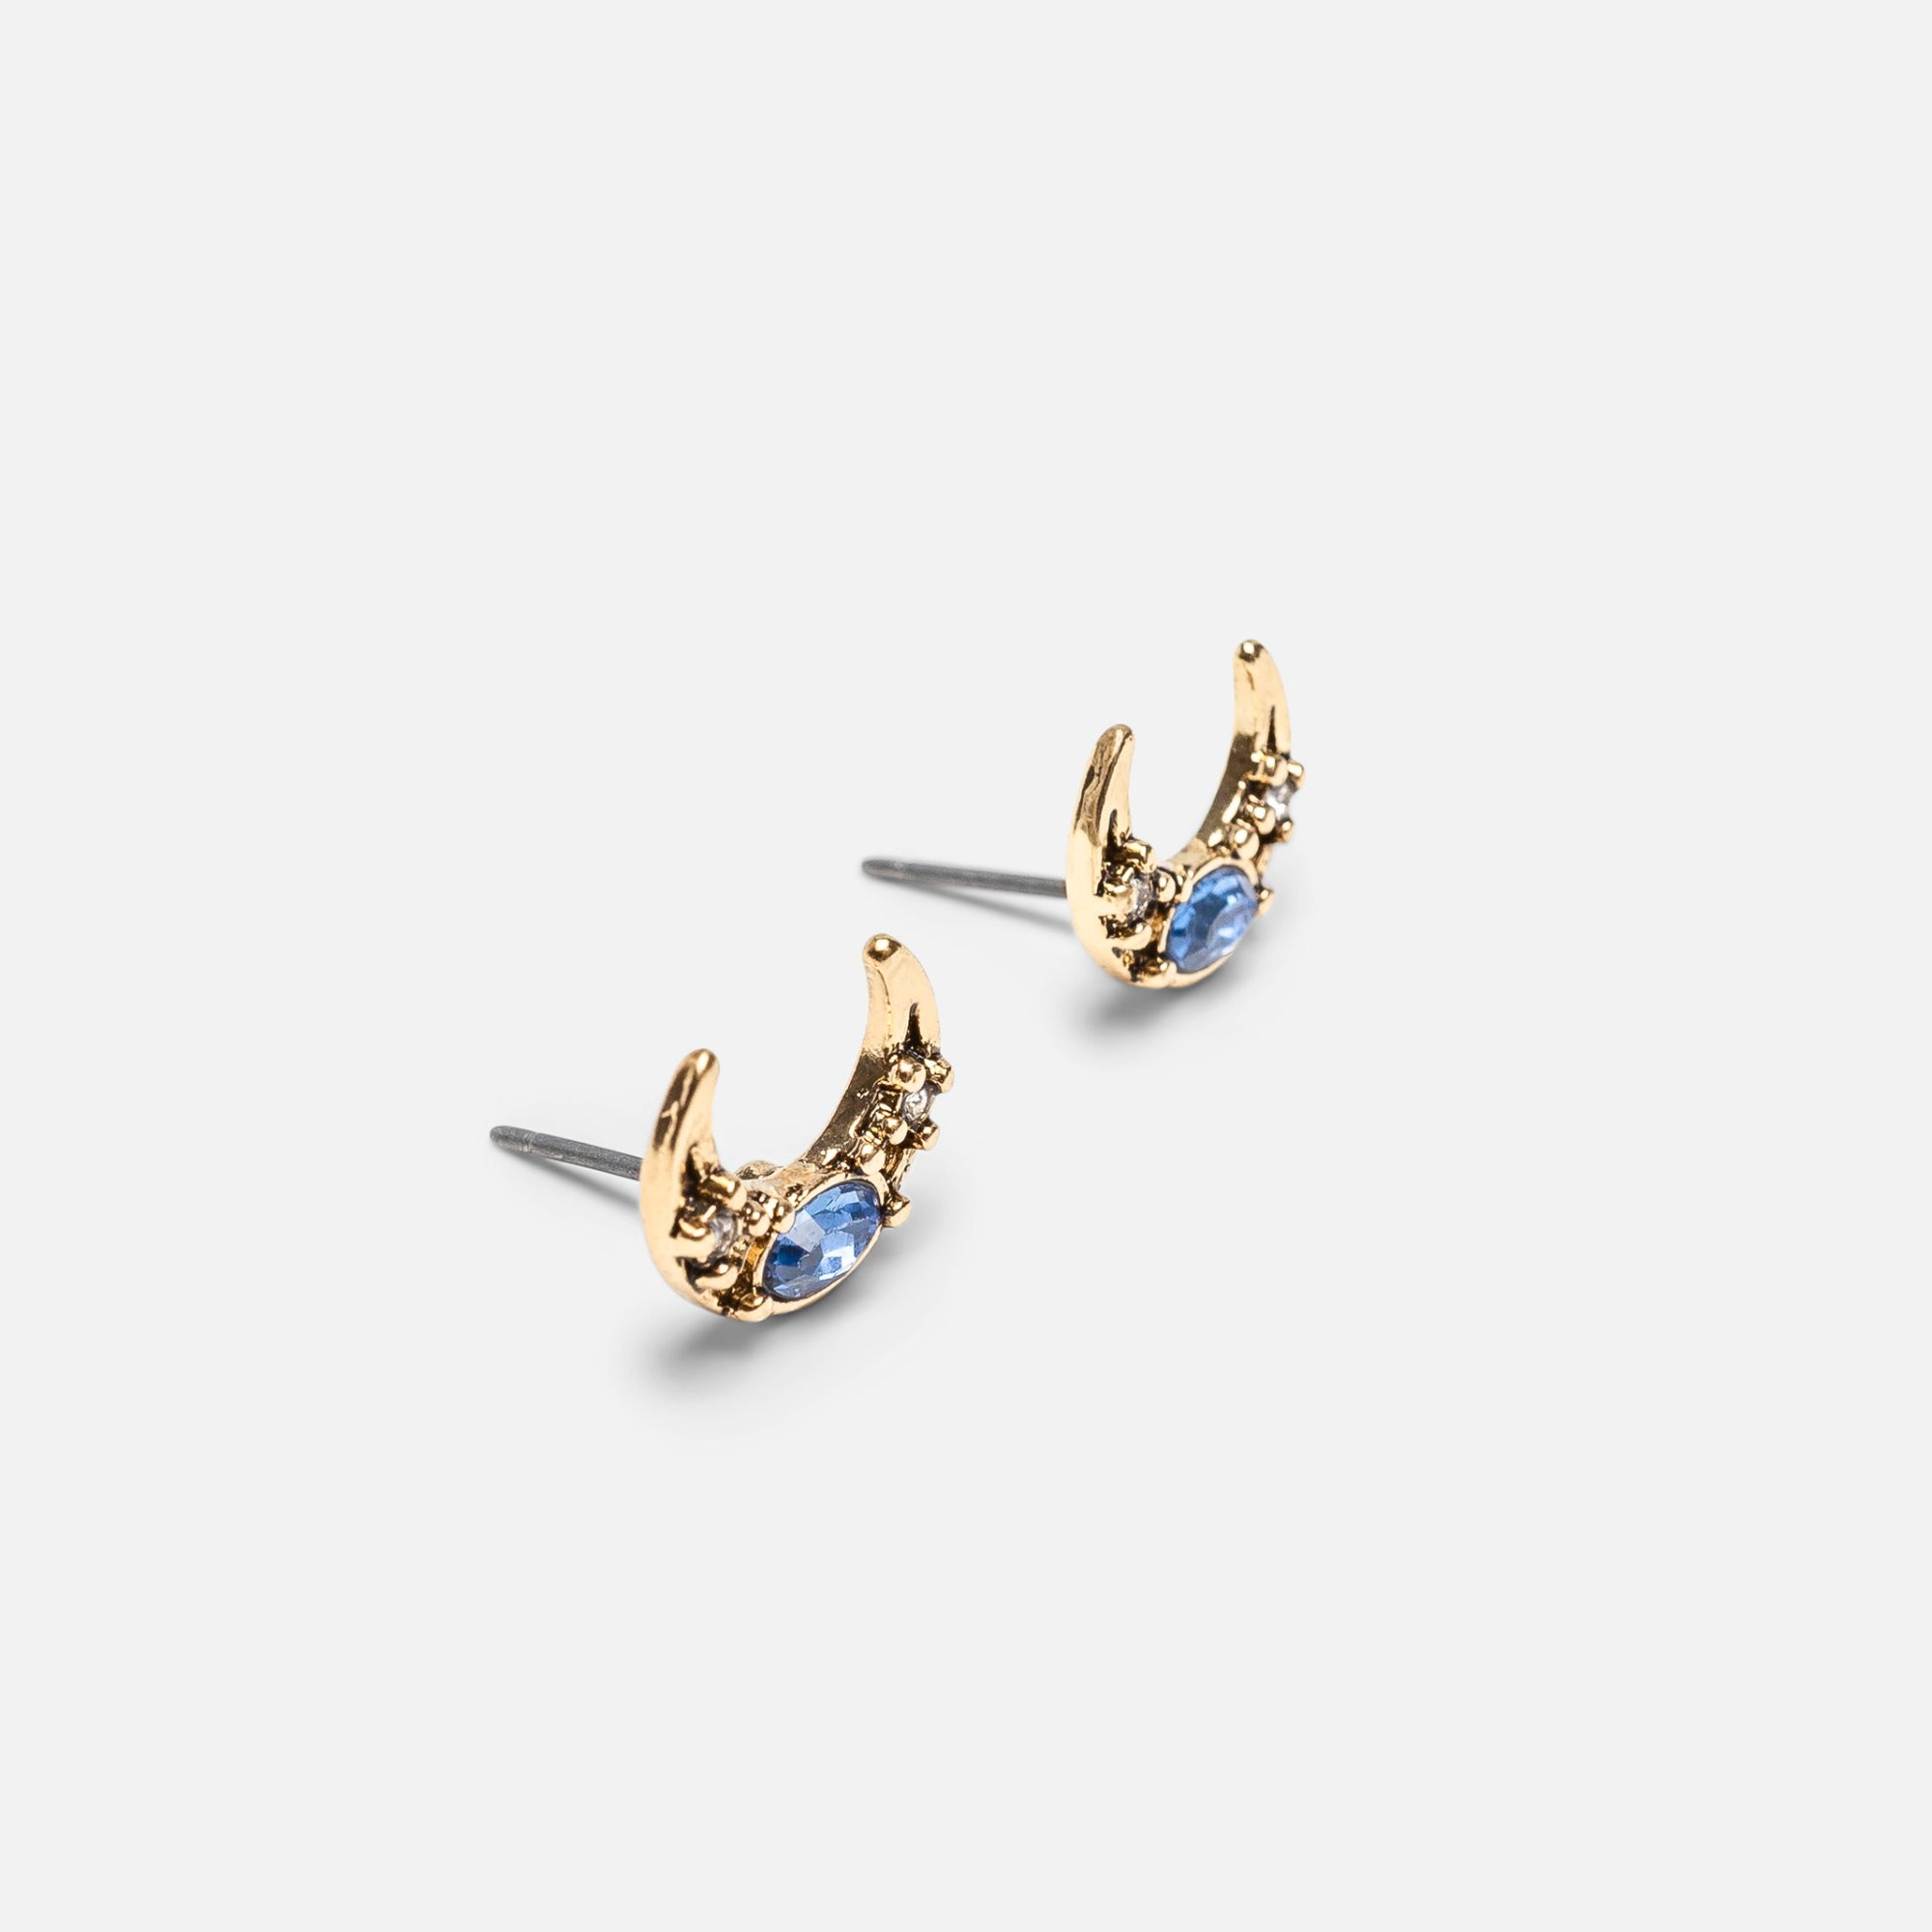 Trio de boucles d'oreilles dorées avec insertions de pierres colorées